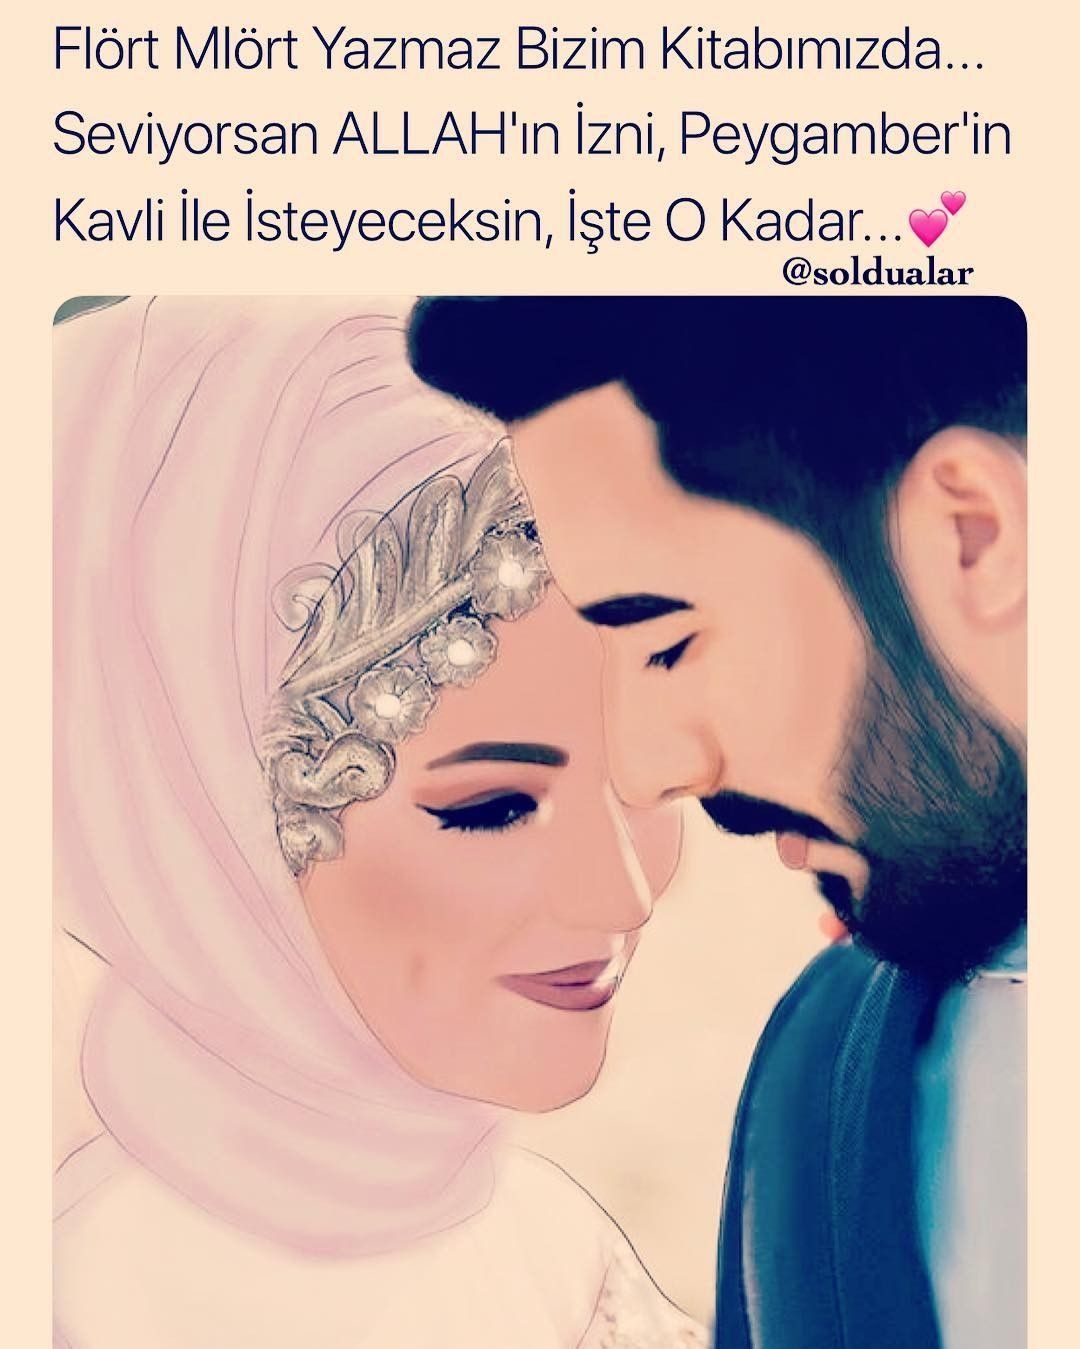 Картинки красивых мусульманских влюблённых пар